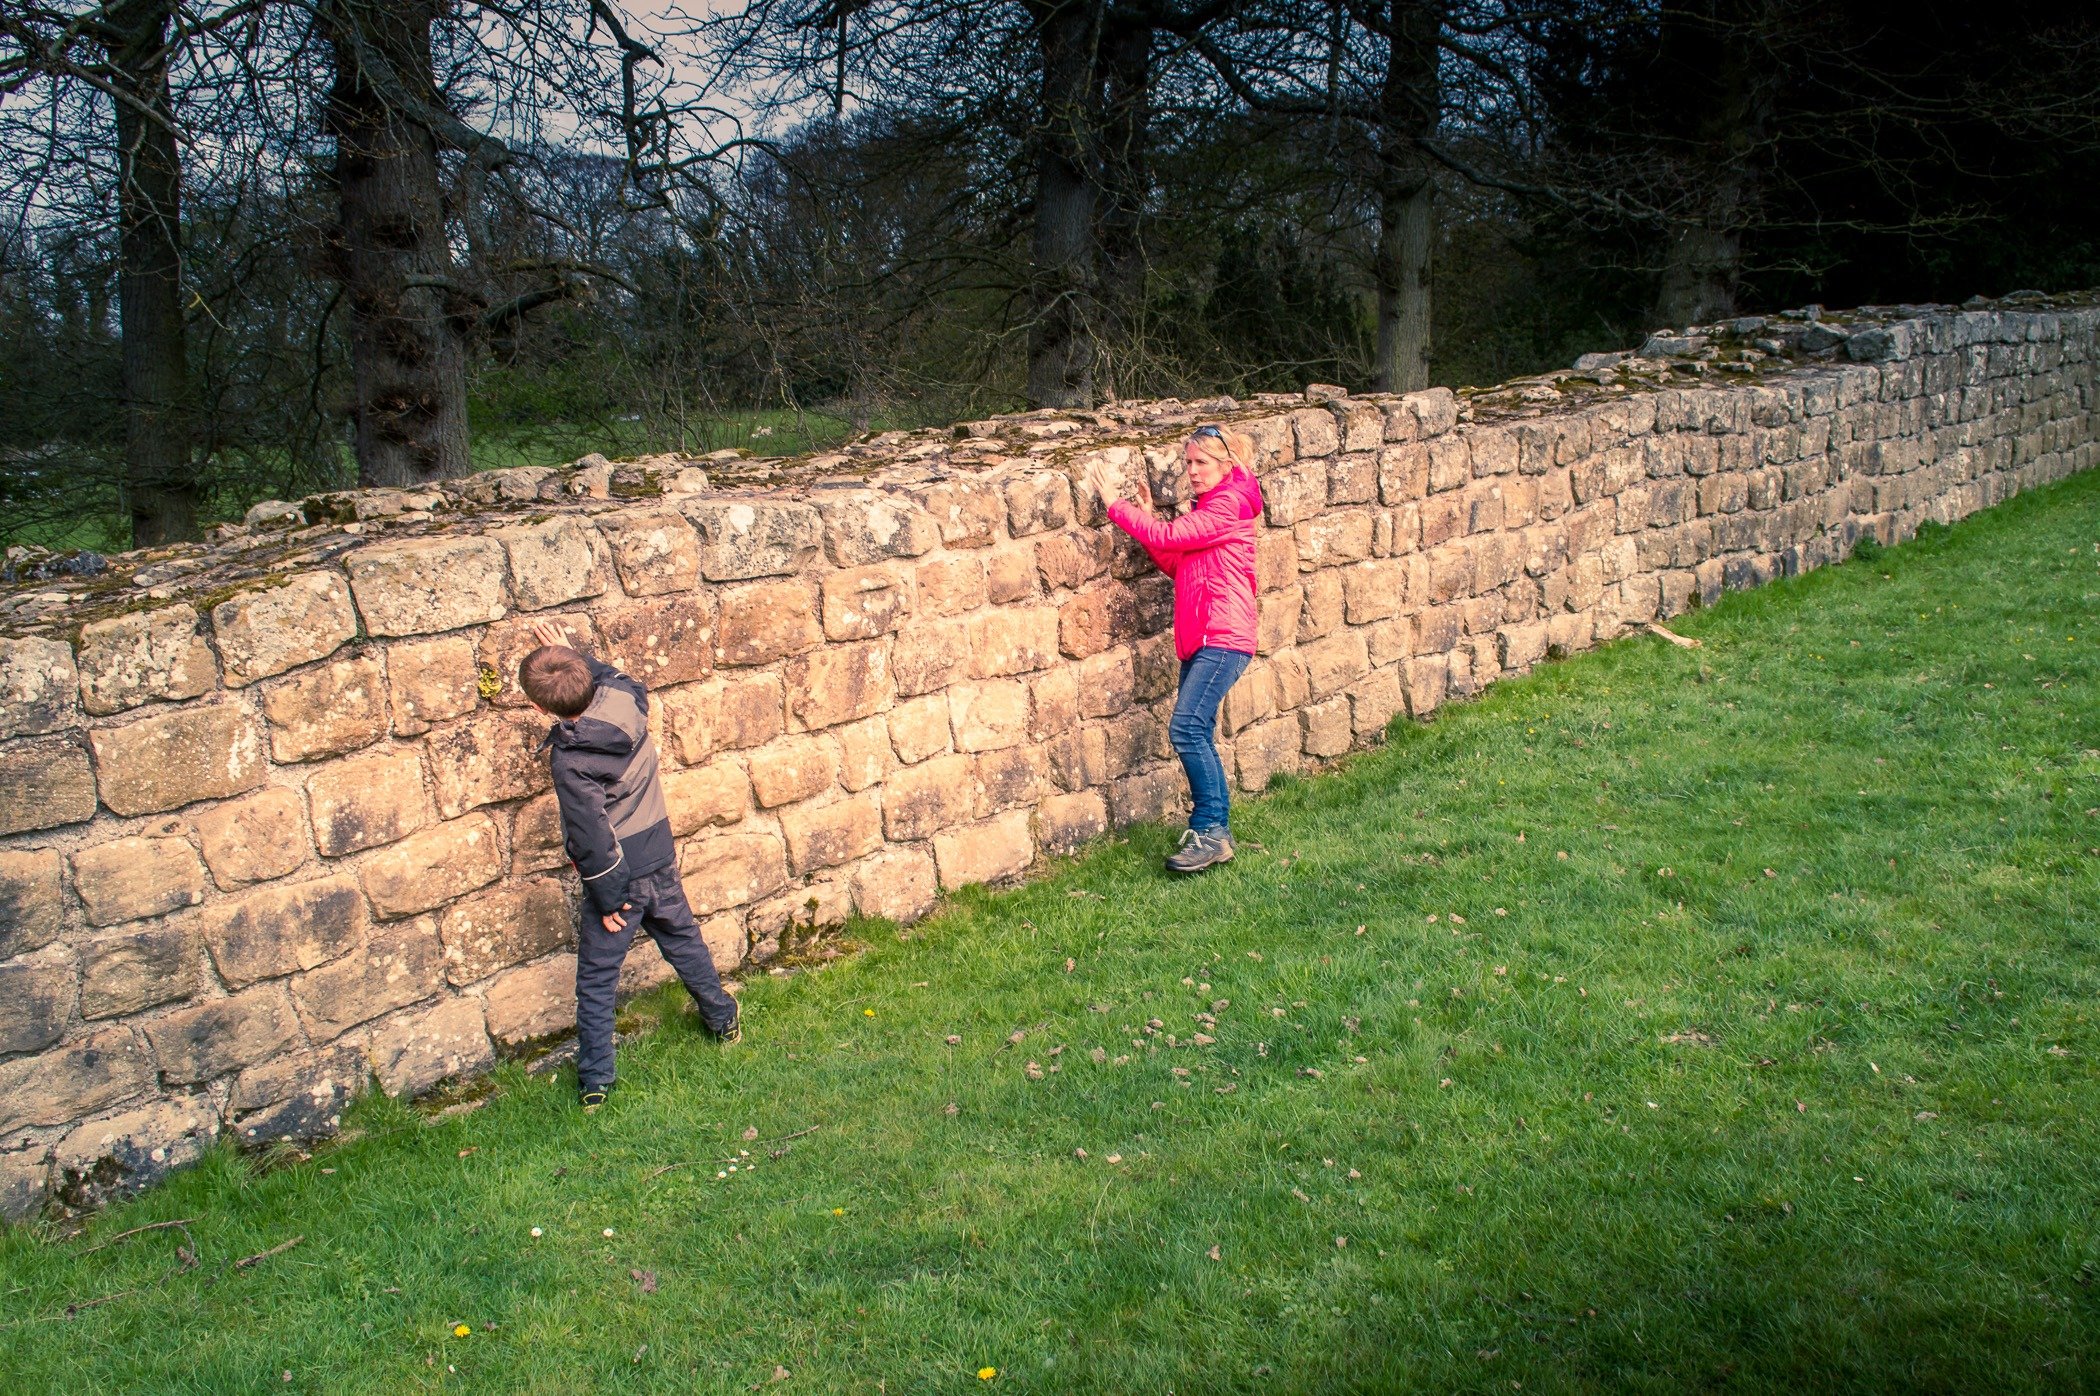 At Hadrians wall